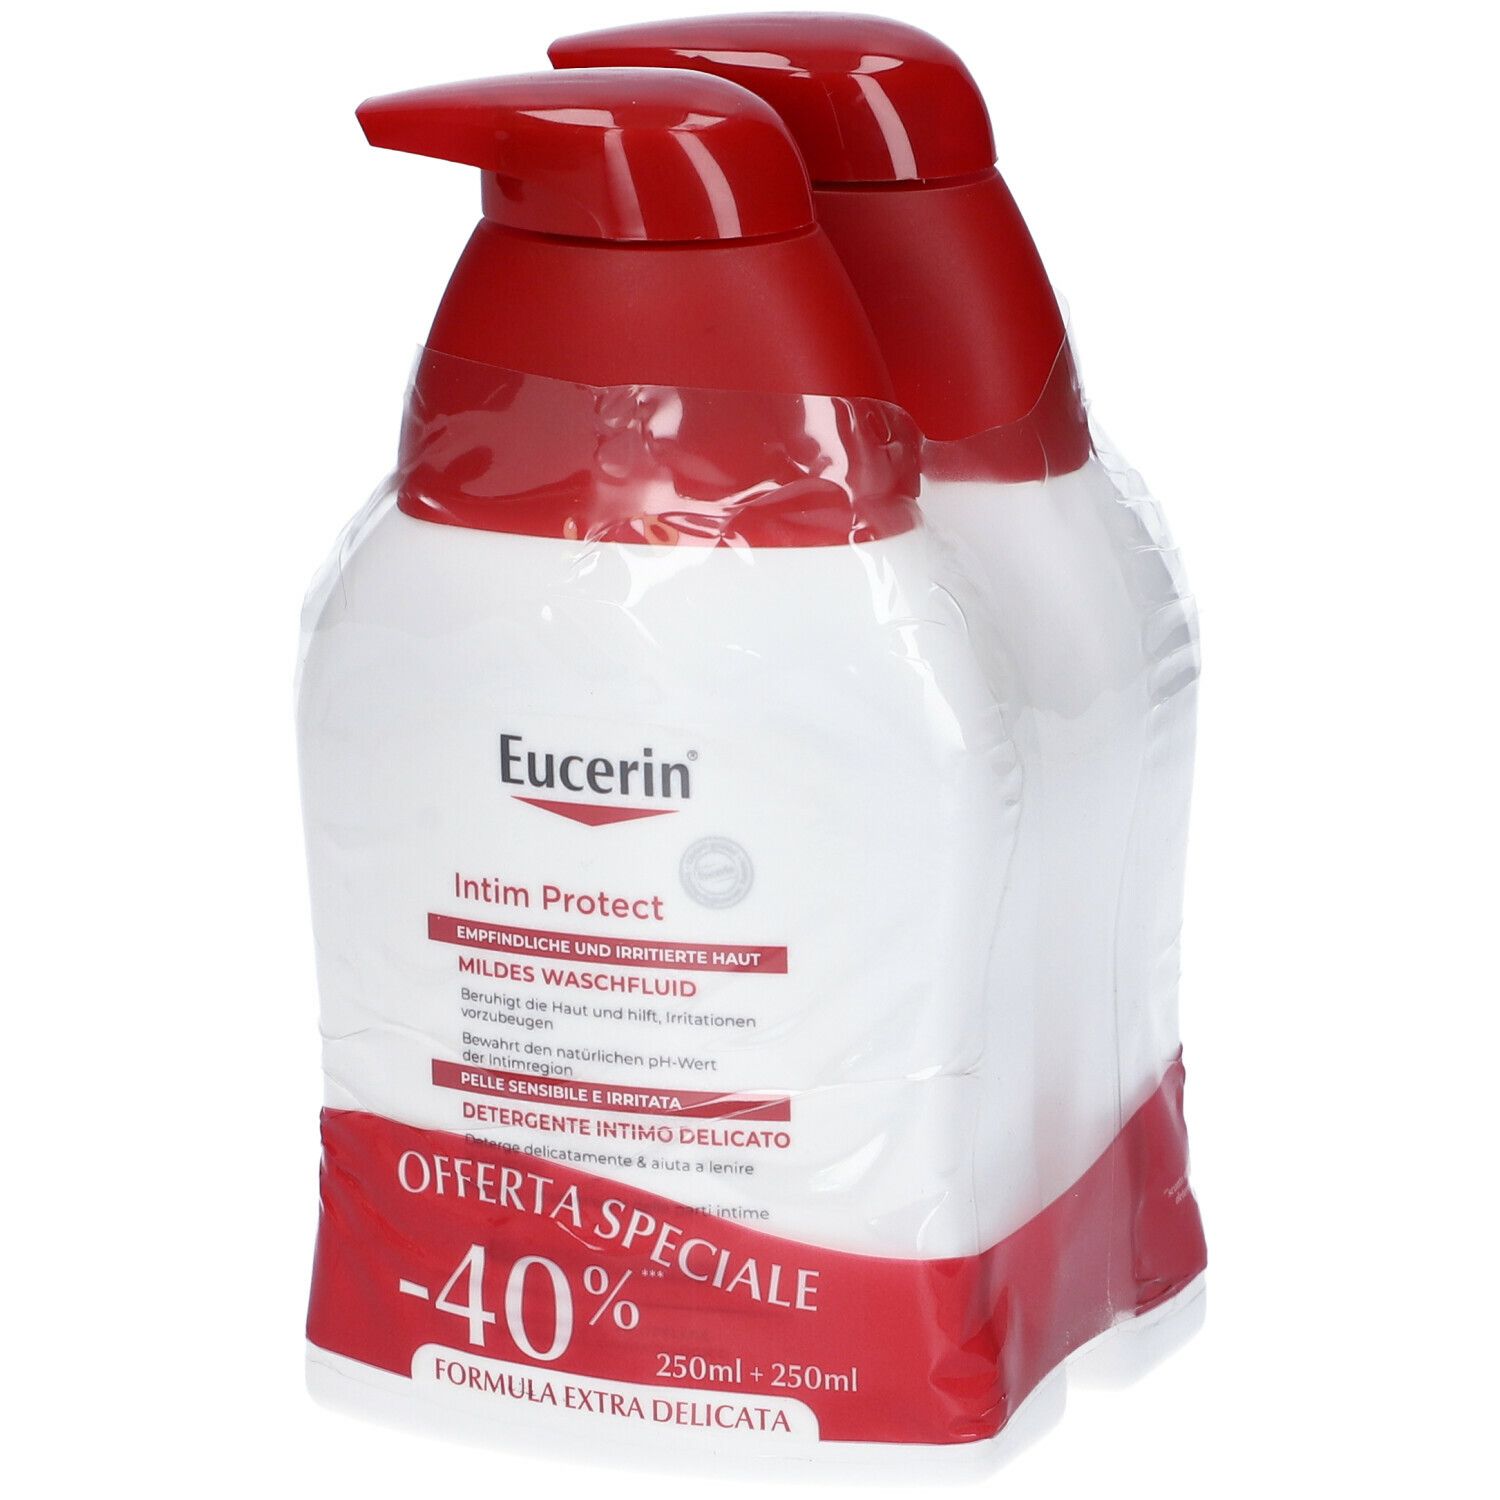 Image of Eucerin Detergente Intimo Delicato Set da 2